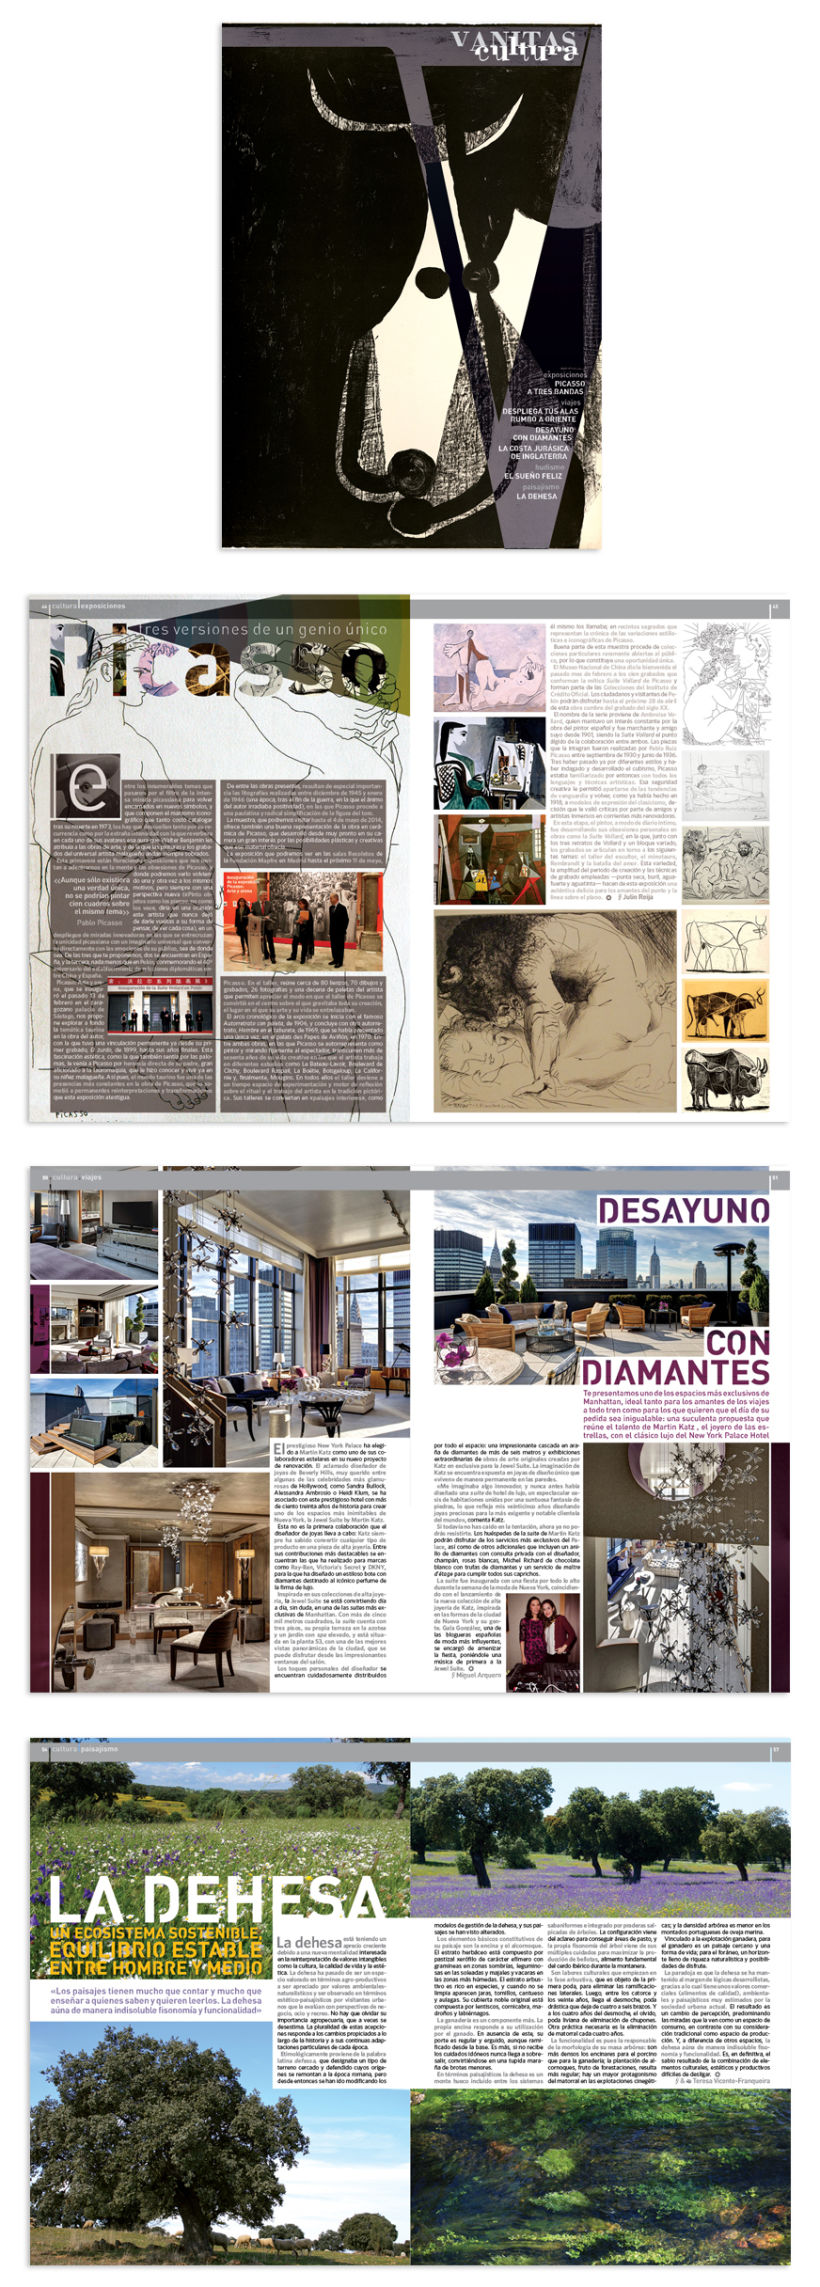 Diseño y Maquetación :: Editorial Design & Layout 3